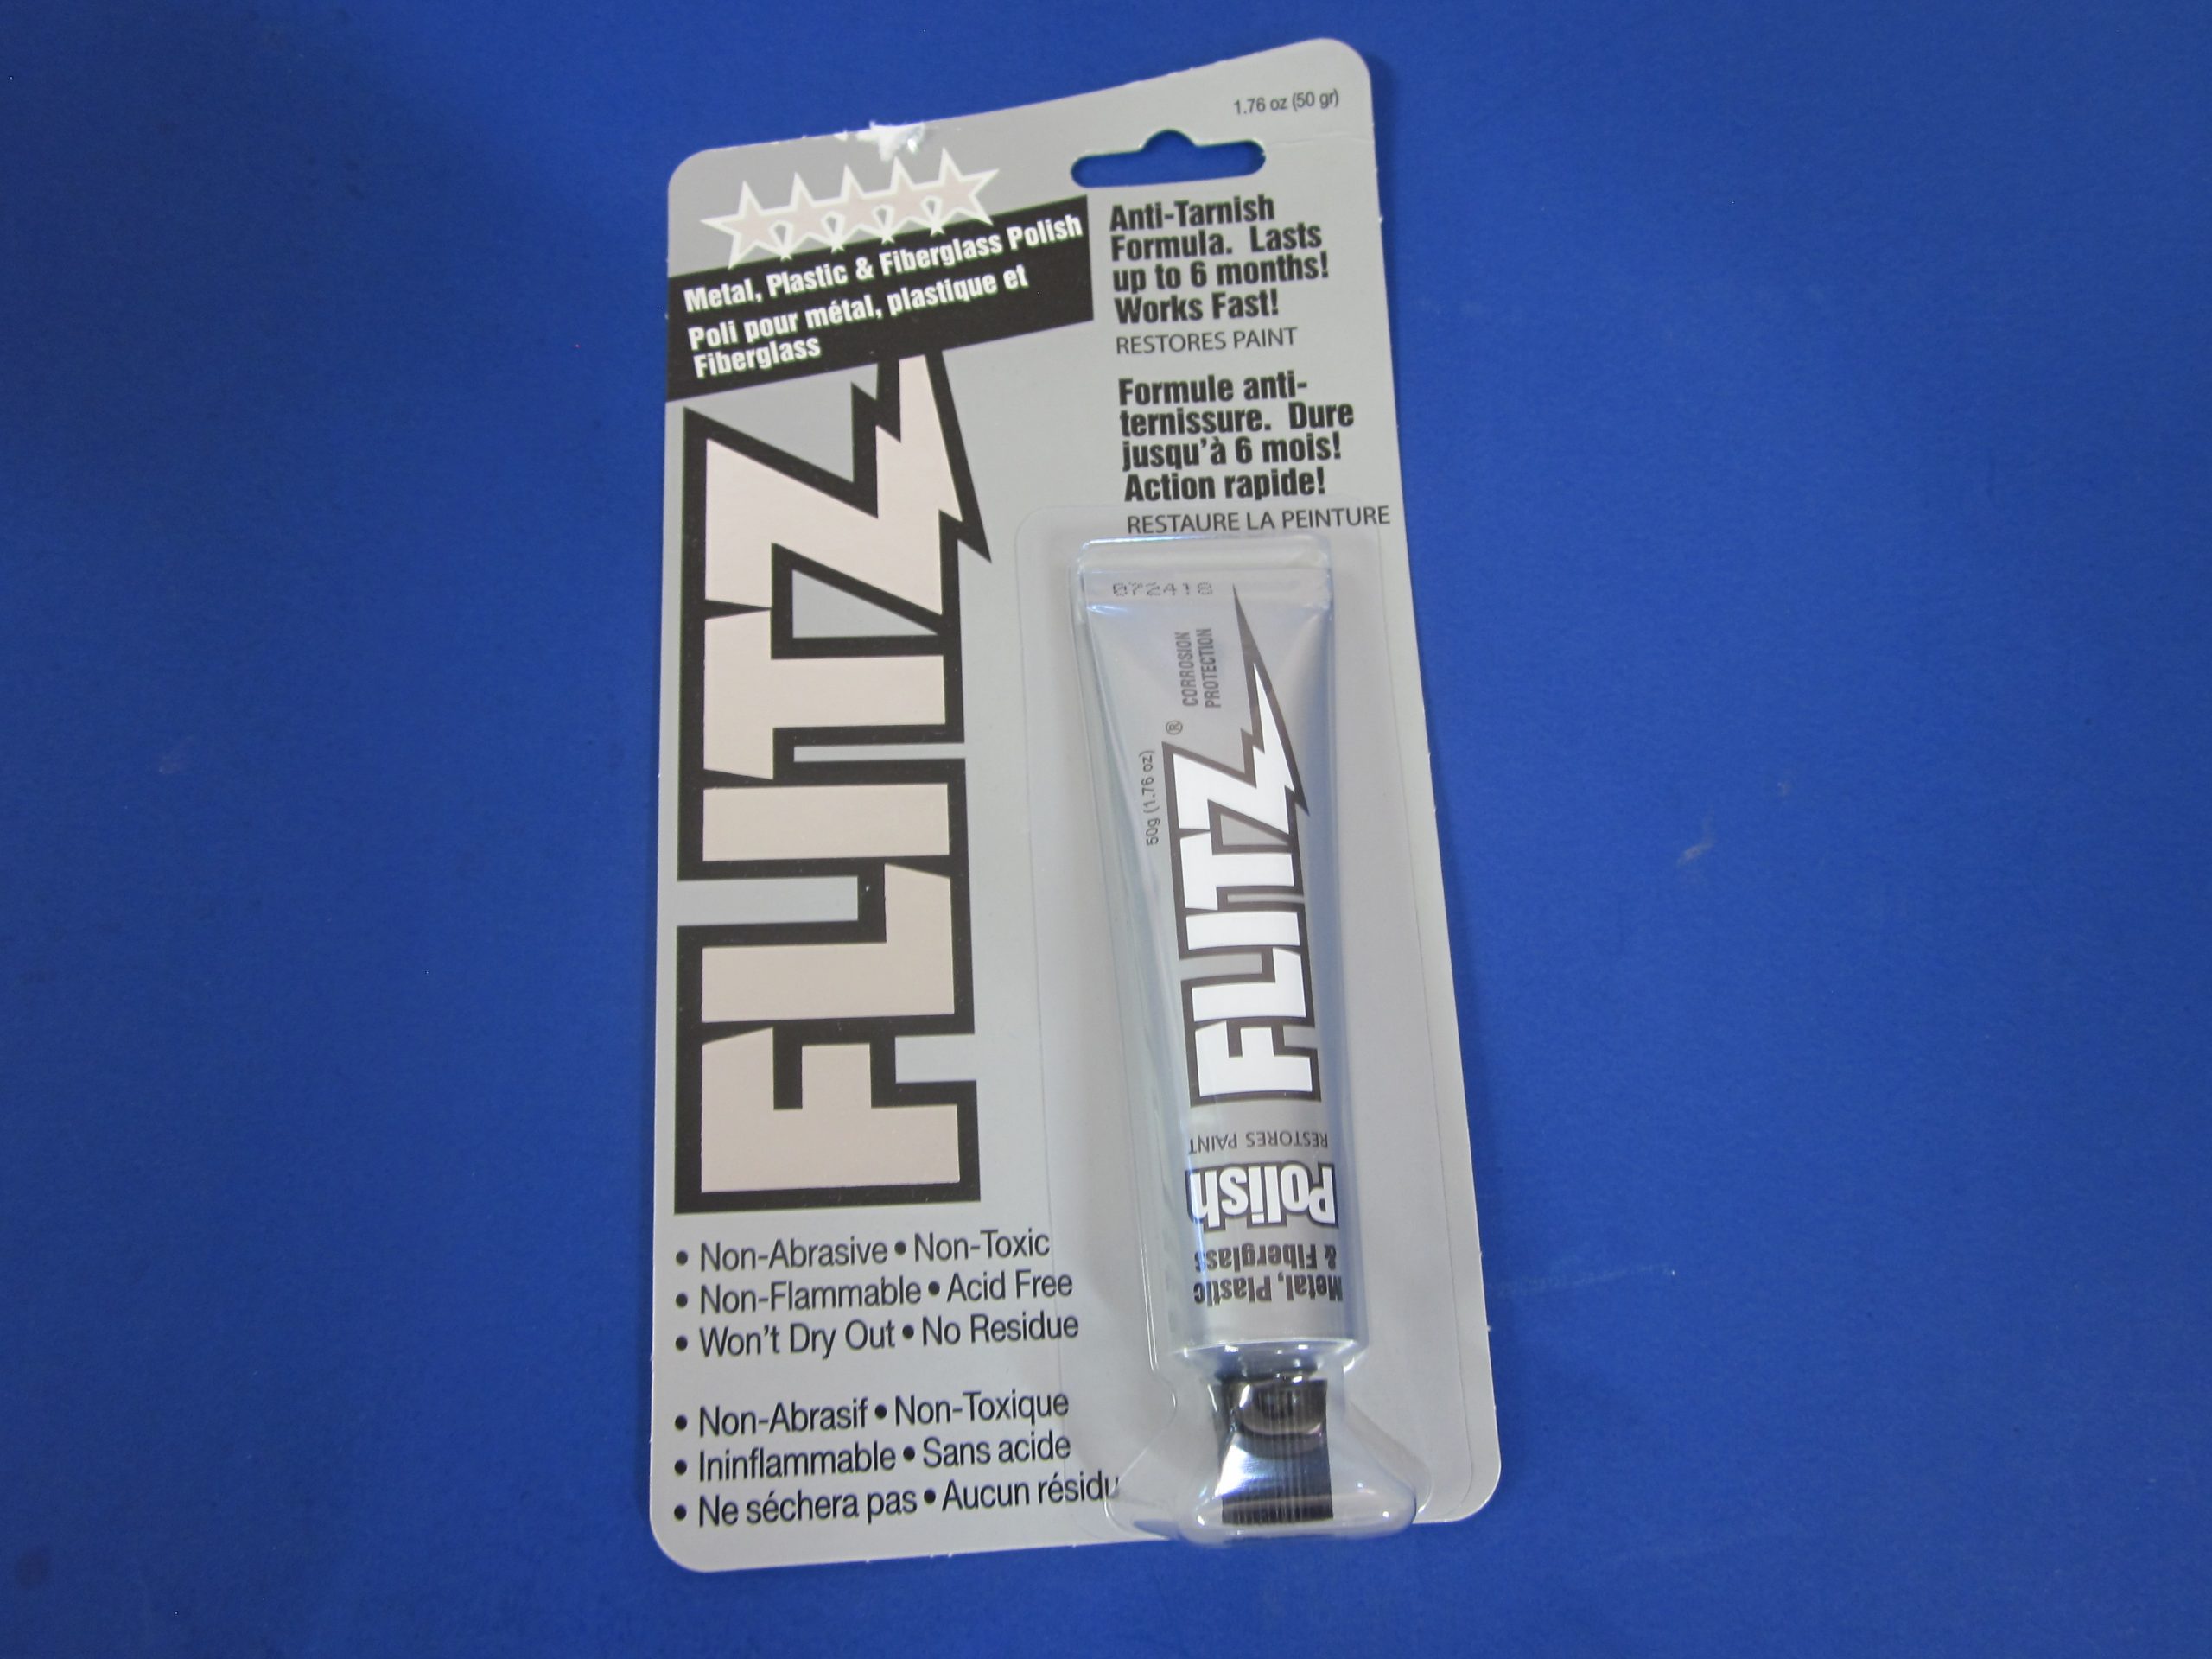 Flitz Metal Polish – Delta Distributing